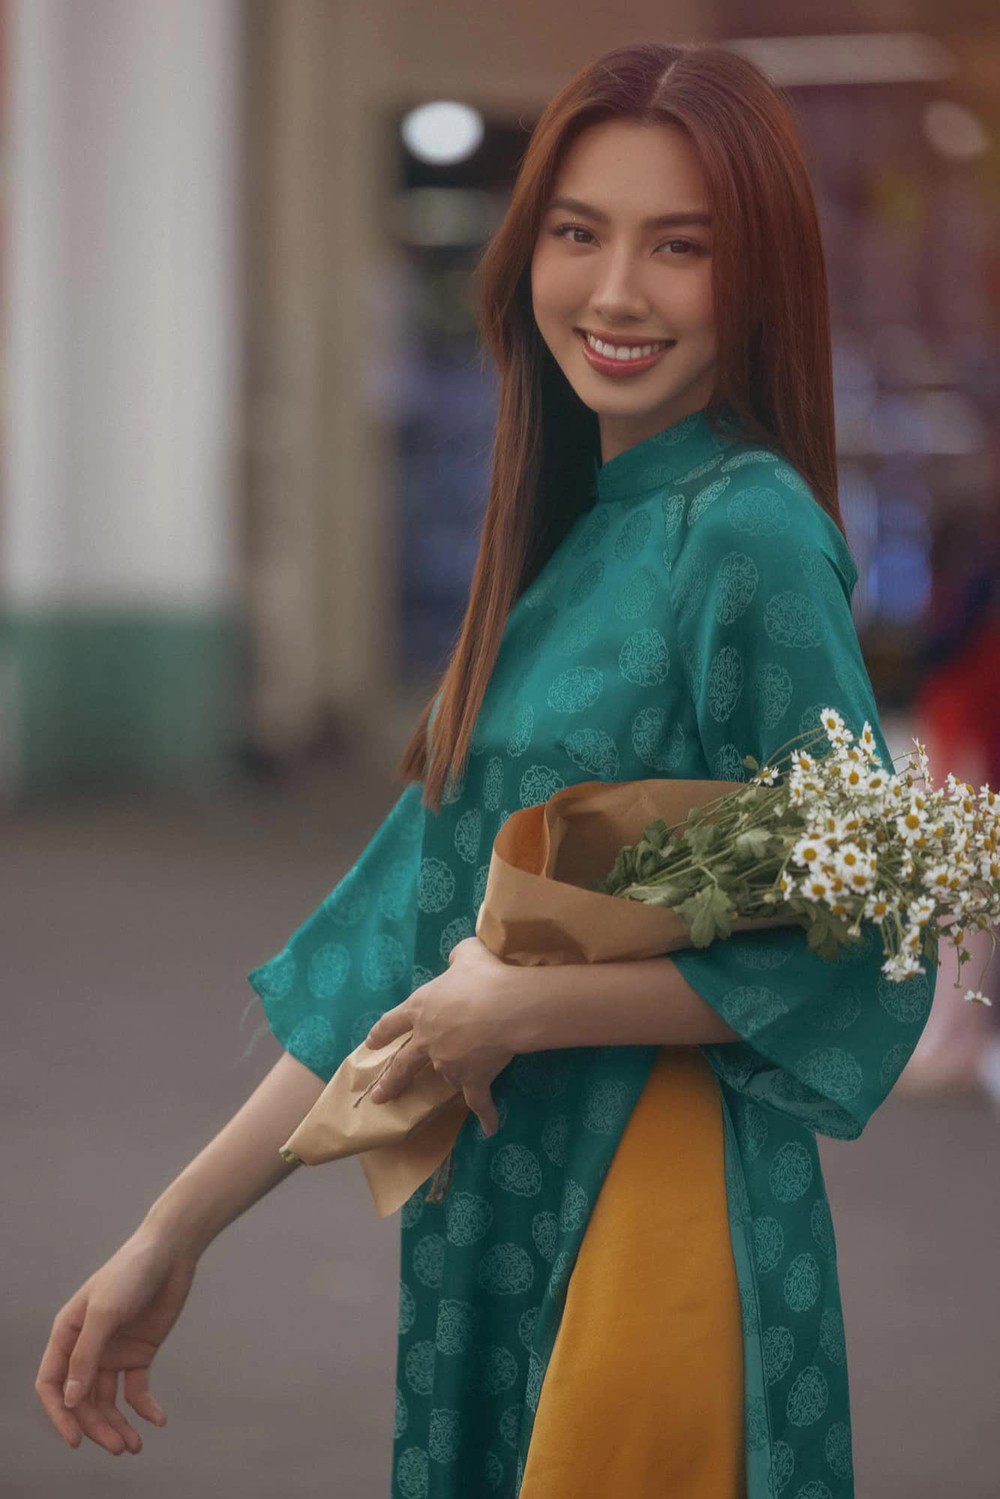 Mê mệt loạt áo dài Tết của Hoa hậu Thùy Tiên: Toàn đồ local brand quen mặt, thiết kế điệu đà cứ diện là xinh - Ảnh 2.